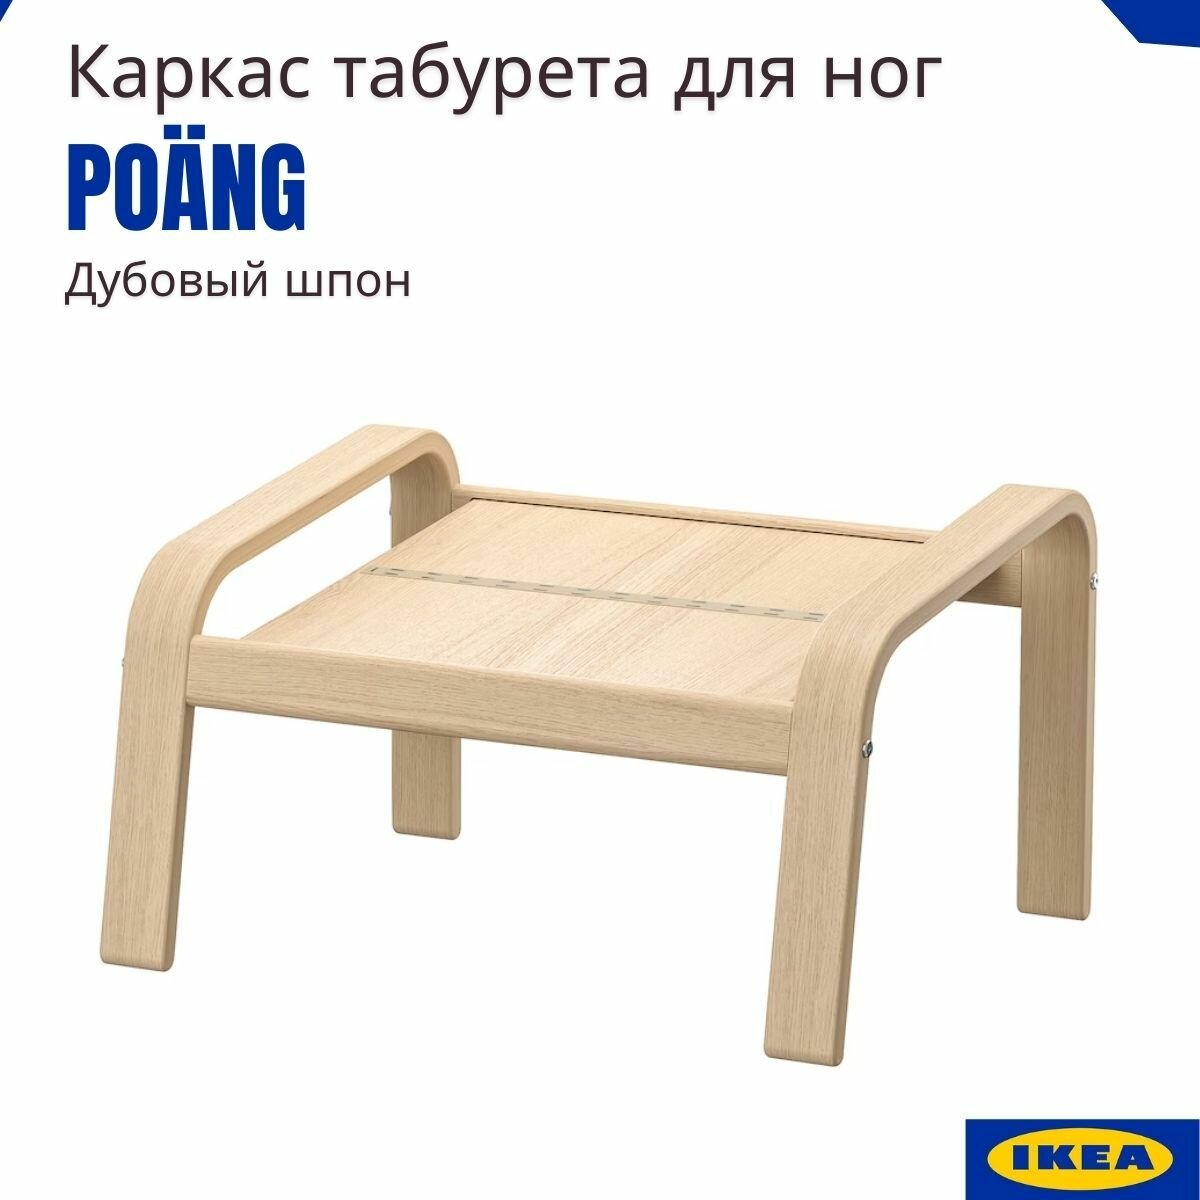 Пуф для ног табурет икеа Поэнг. Подставка для ног IKEA Poang. Банкетка, оттоманка, 1 шт